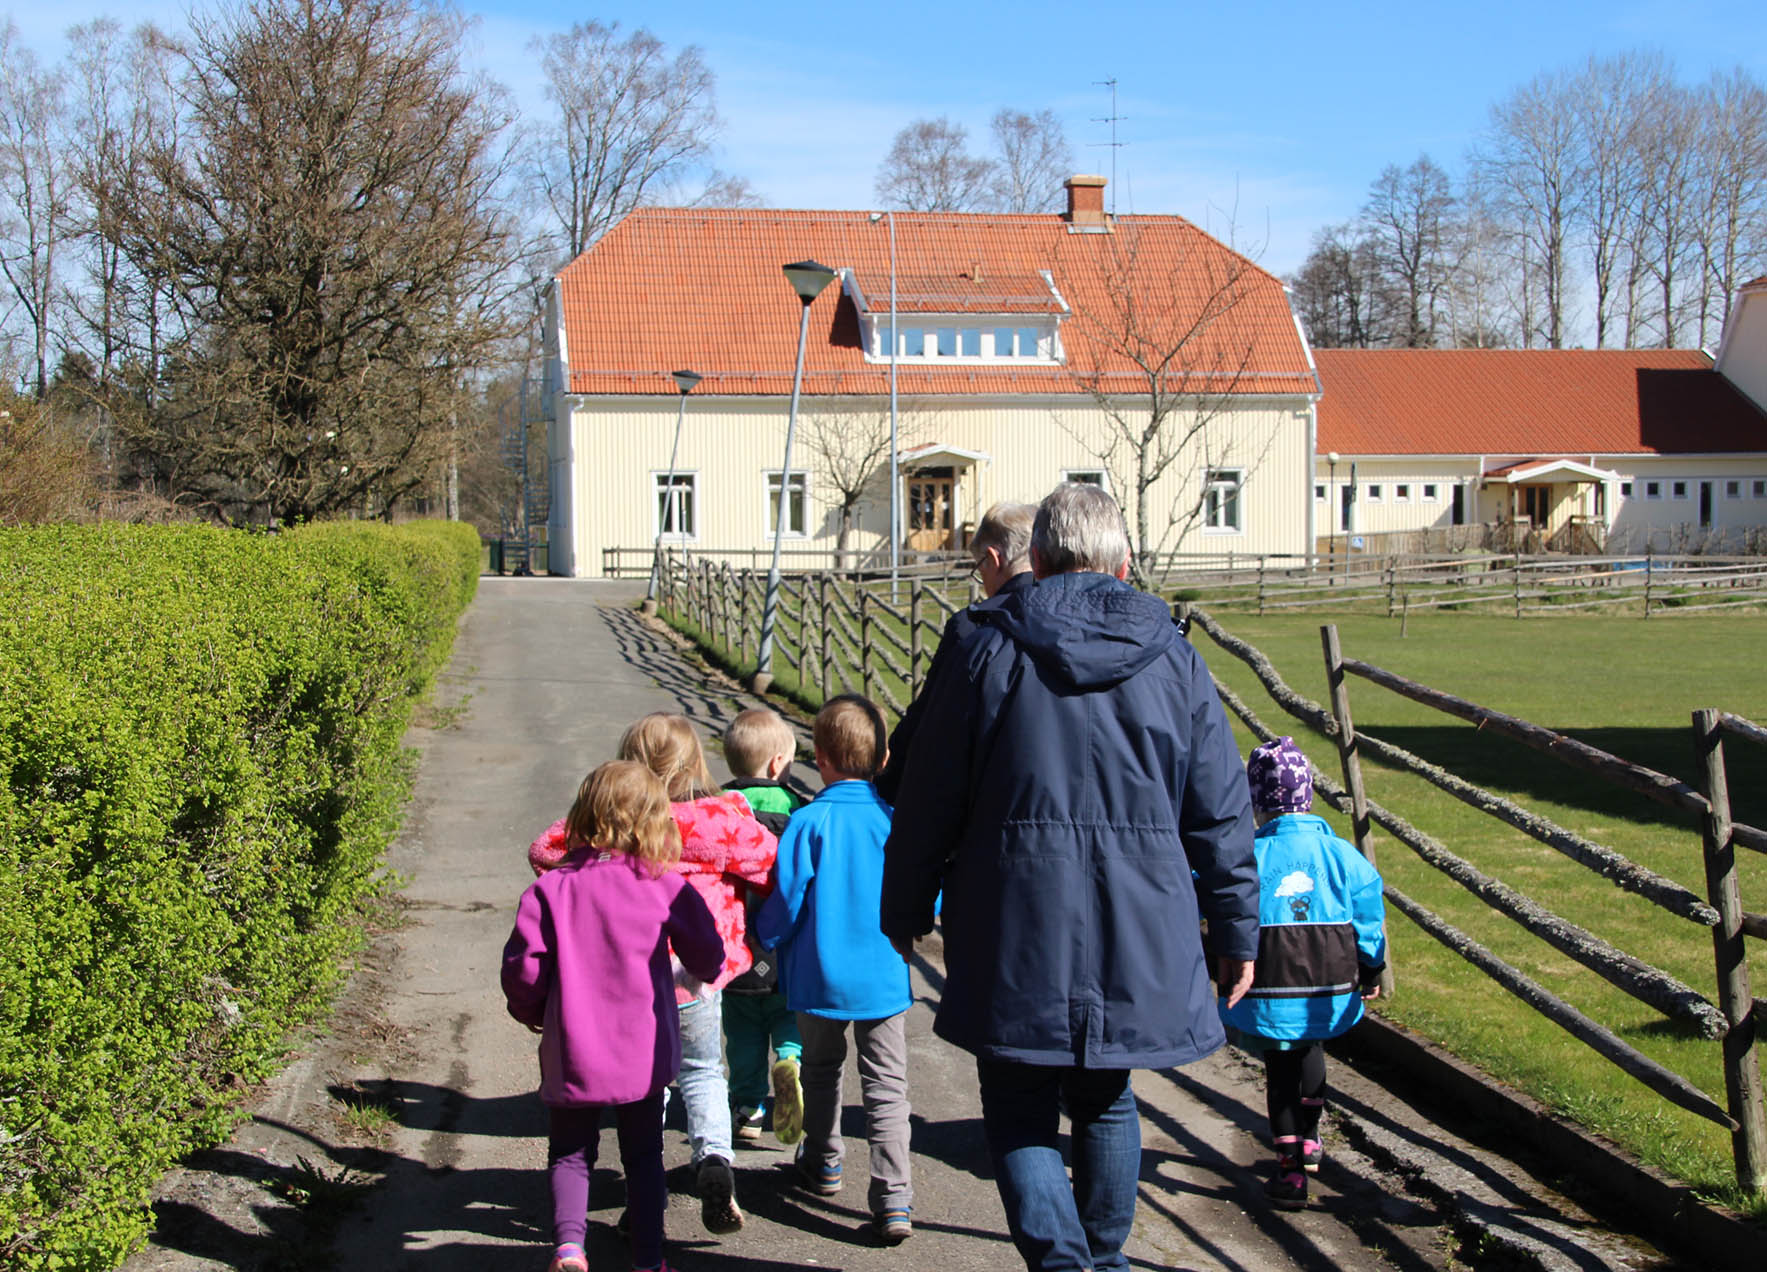 En grupp med barn som går längst vägen tillsammans med två vuxna. Barnen har olika färger på sina jackor och solen skiner. I bakgrunden syns ett stort gult hus som barnen och de vuxna rör sig mot.